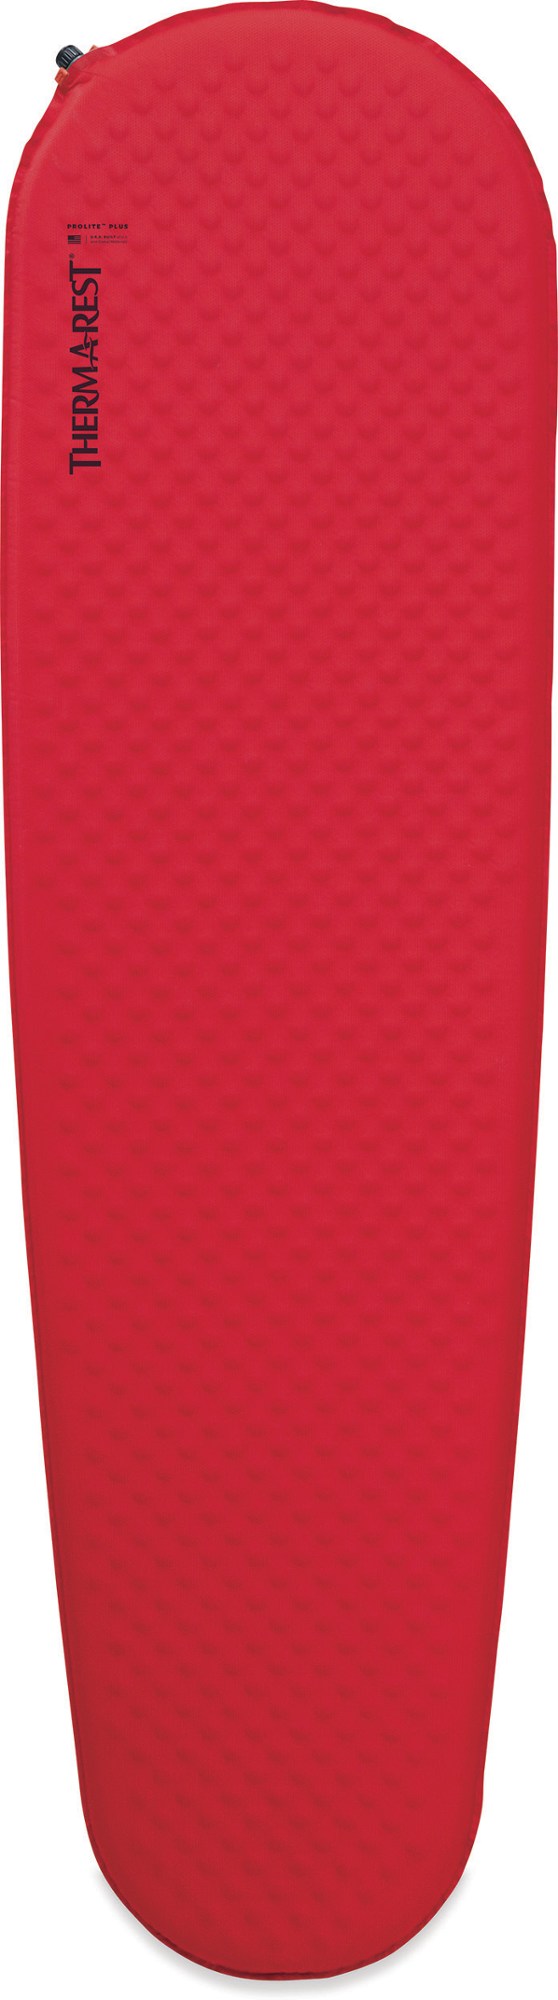 Спальный коврик ProLite Plus Therm-a-Rest, красный коврик самонадувающийся ​therm a rest prolite plus regular